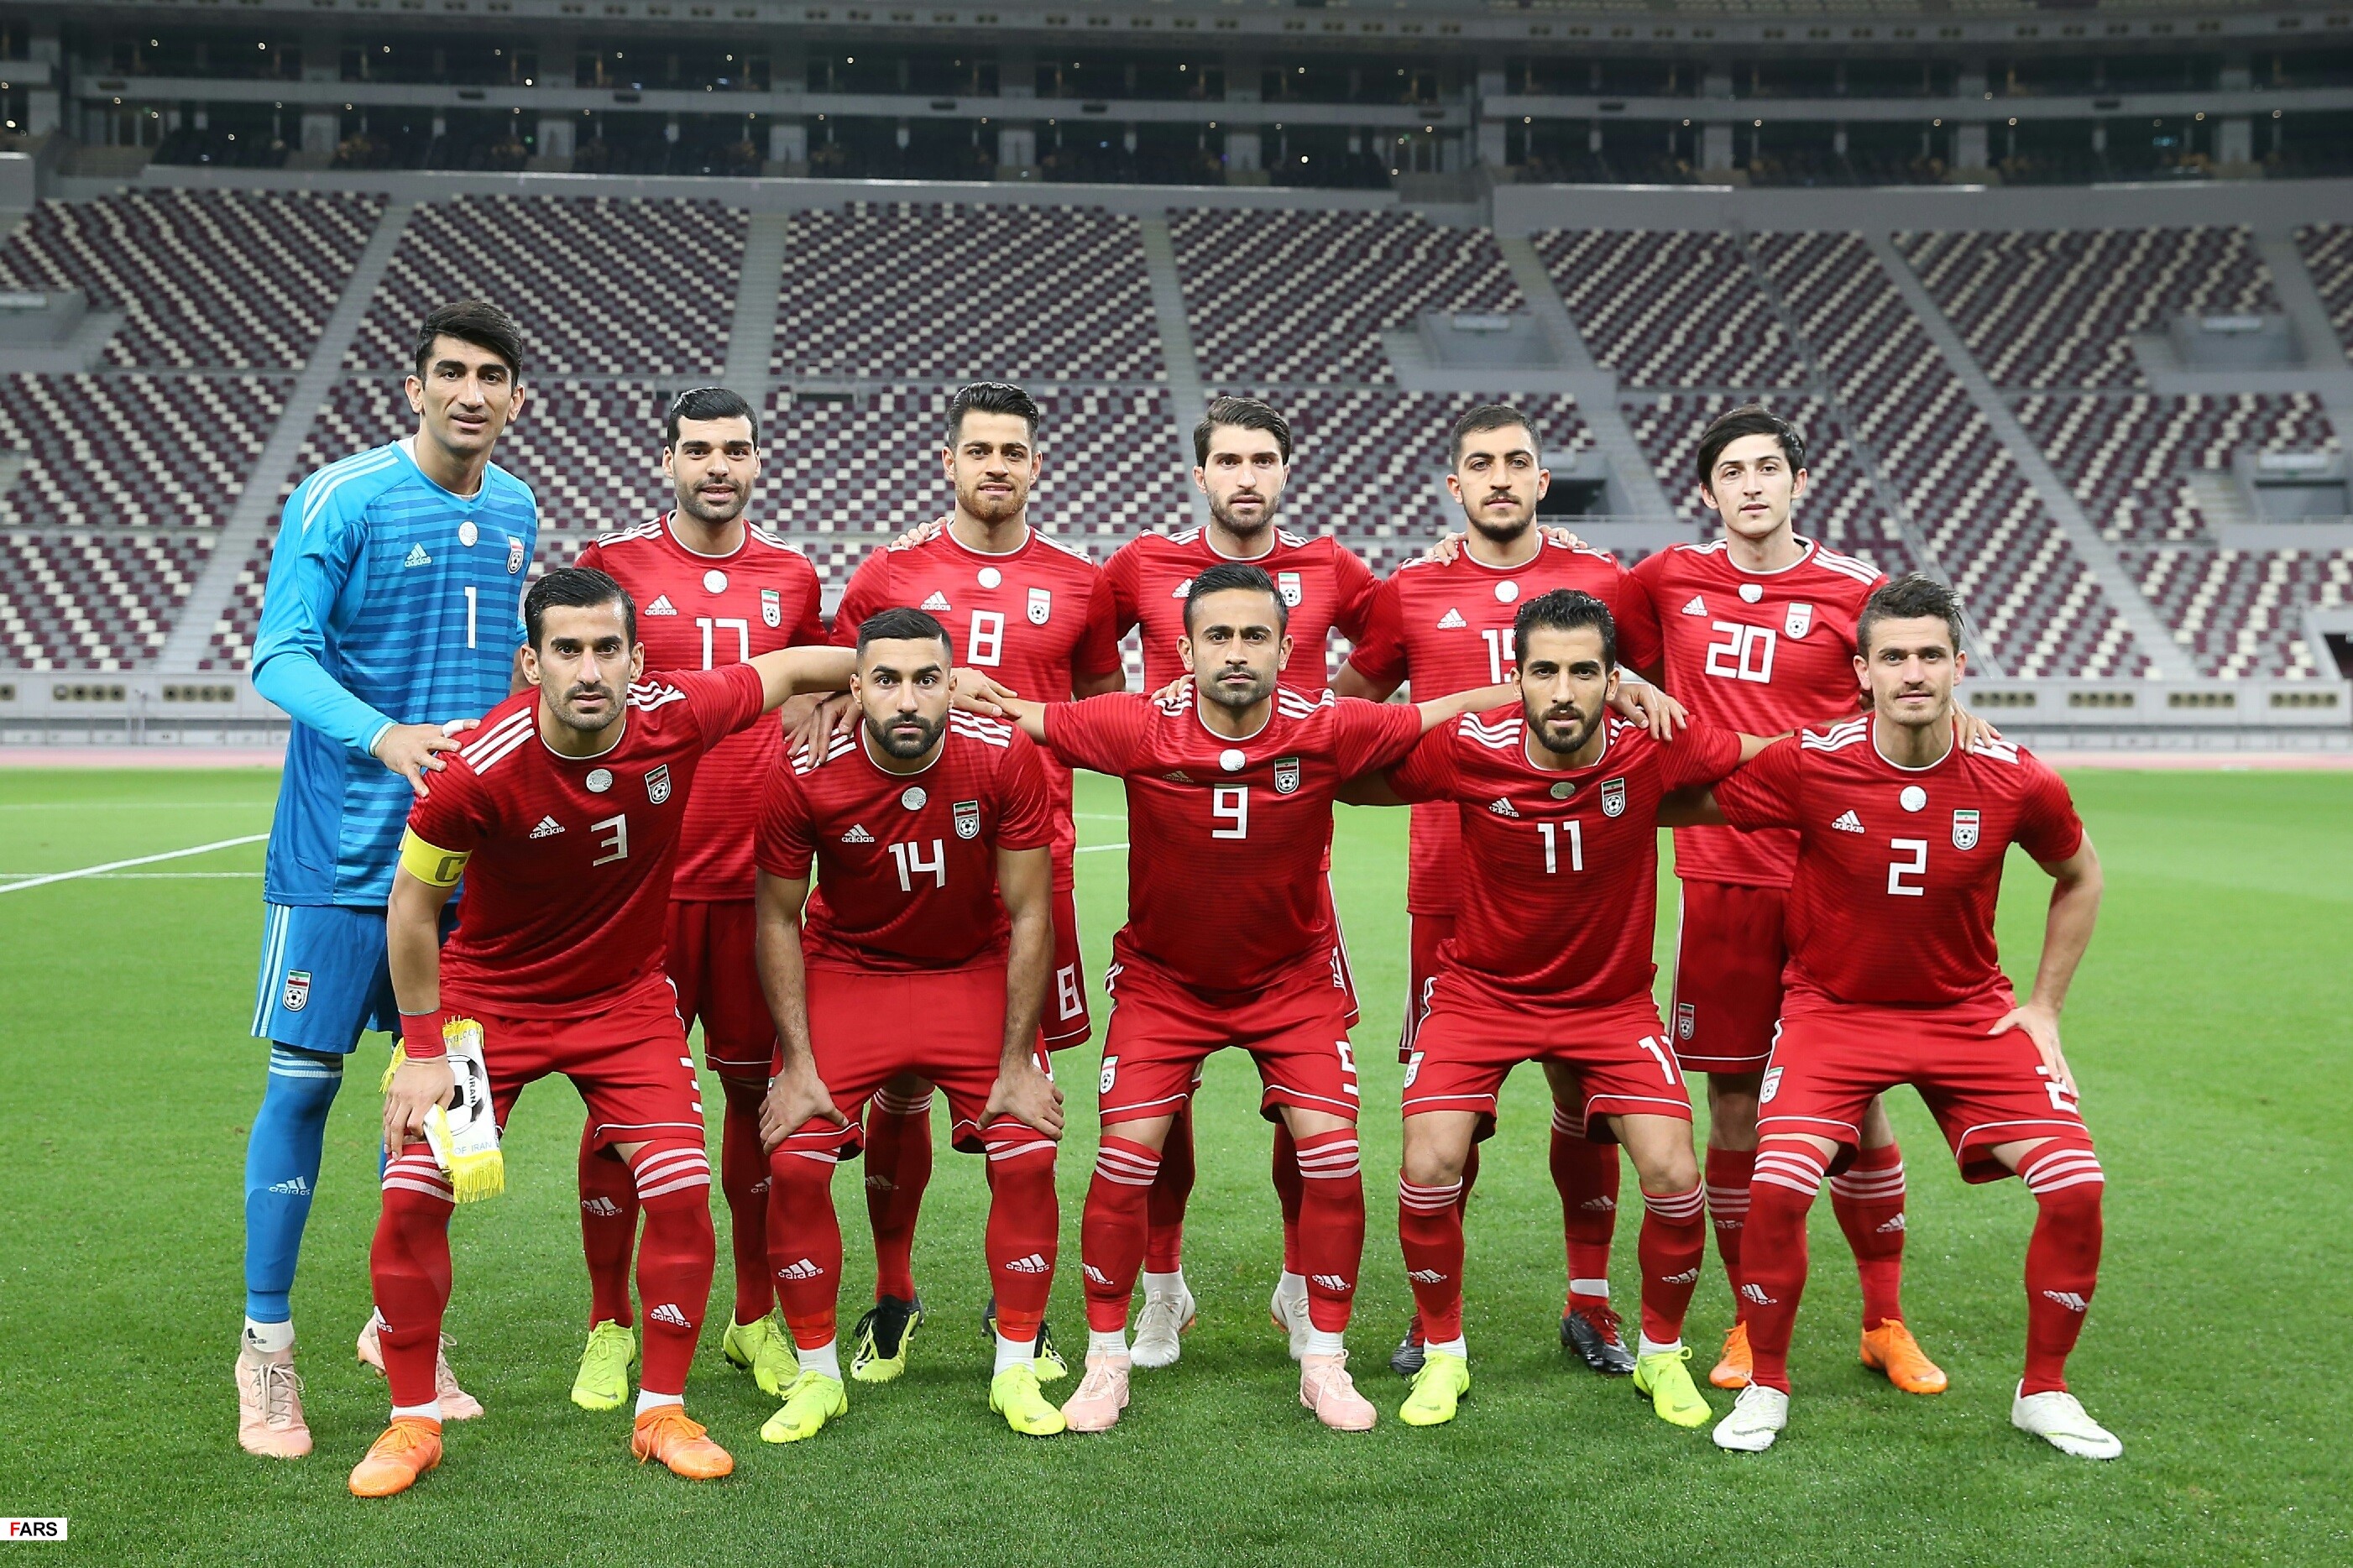 Скачать обои Сборная Ирана По Футболу на телефон бесплатно